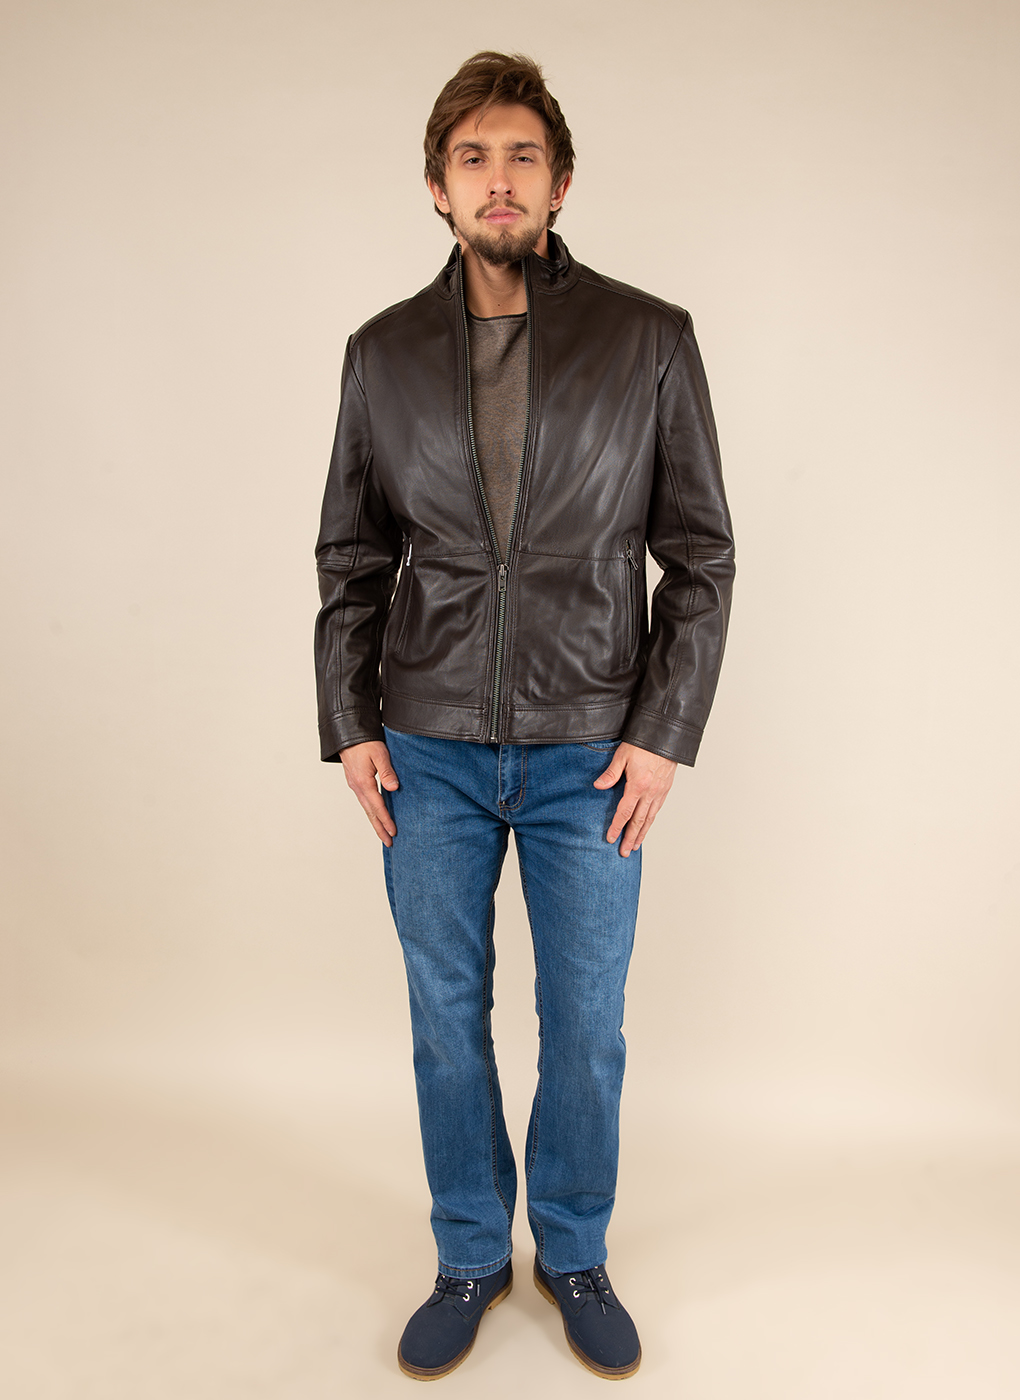 Кожаная куртка мужская Каляев 51795 коричневая 60 RU